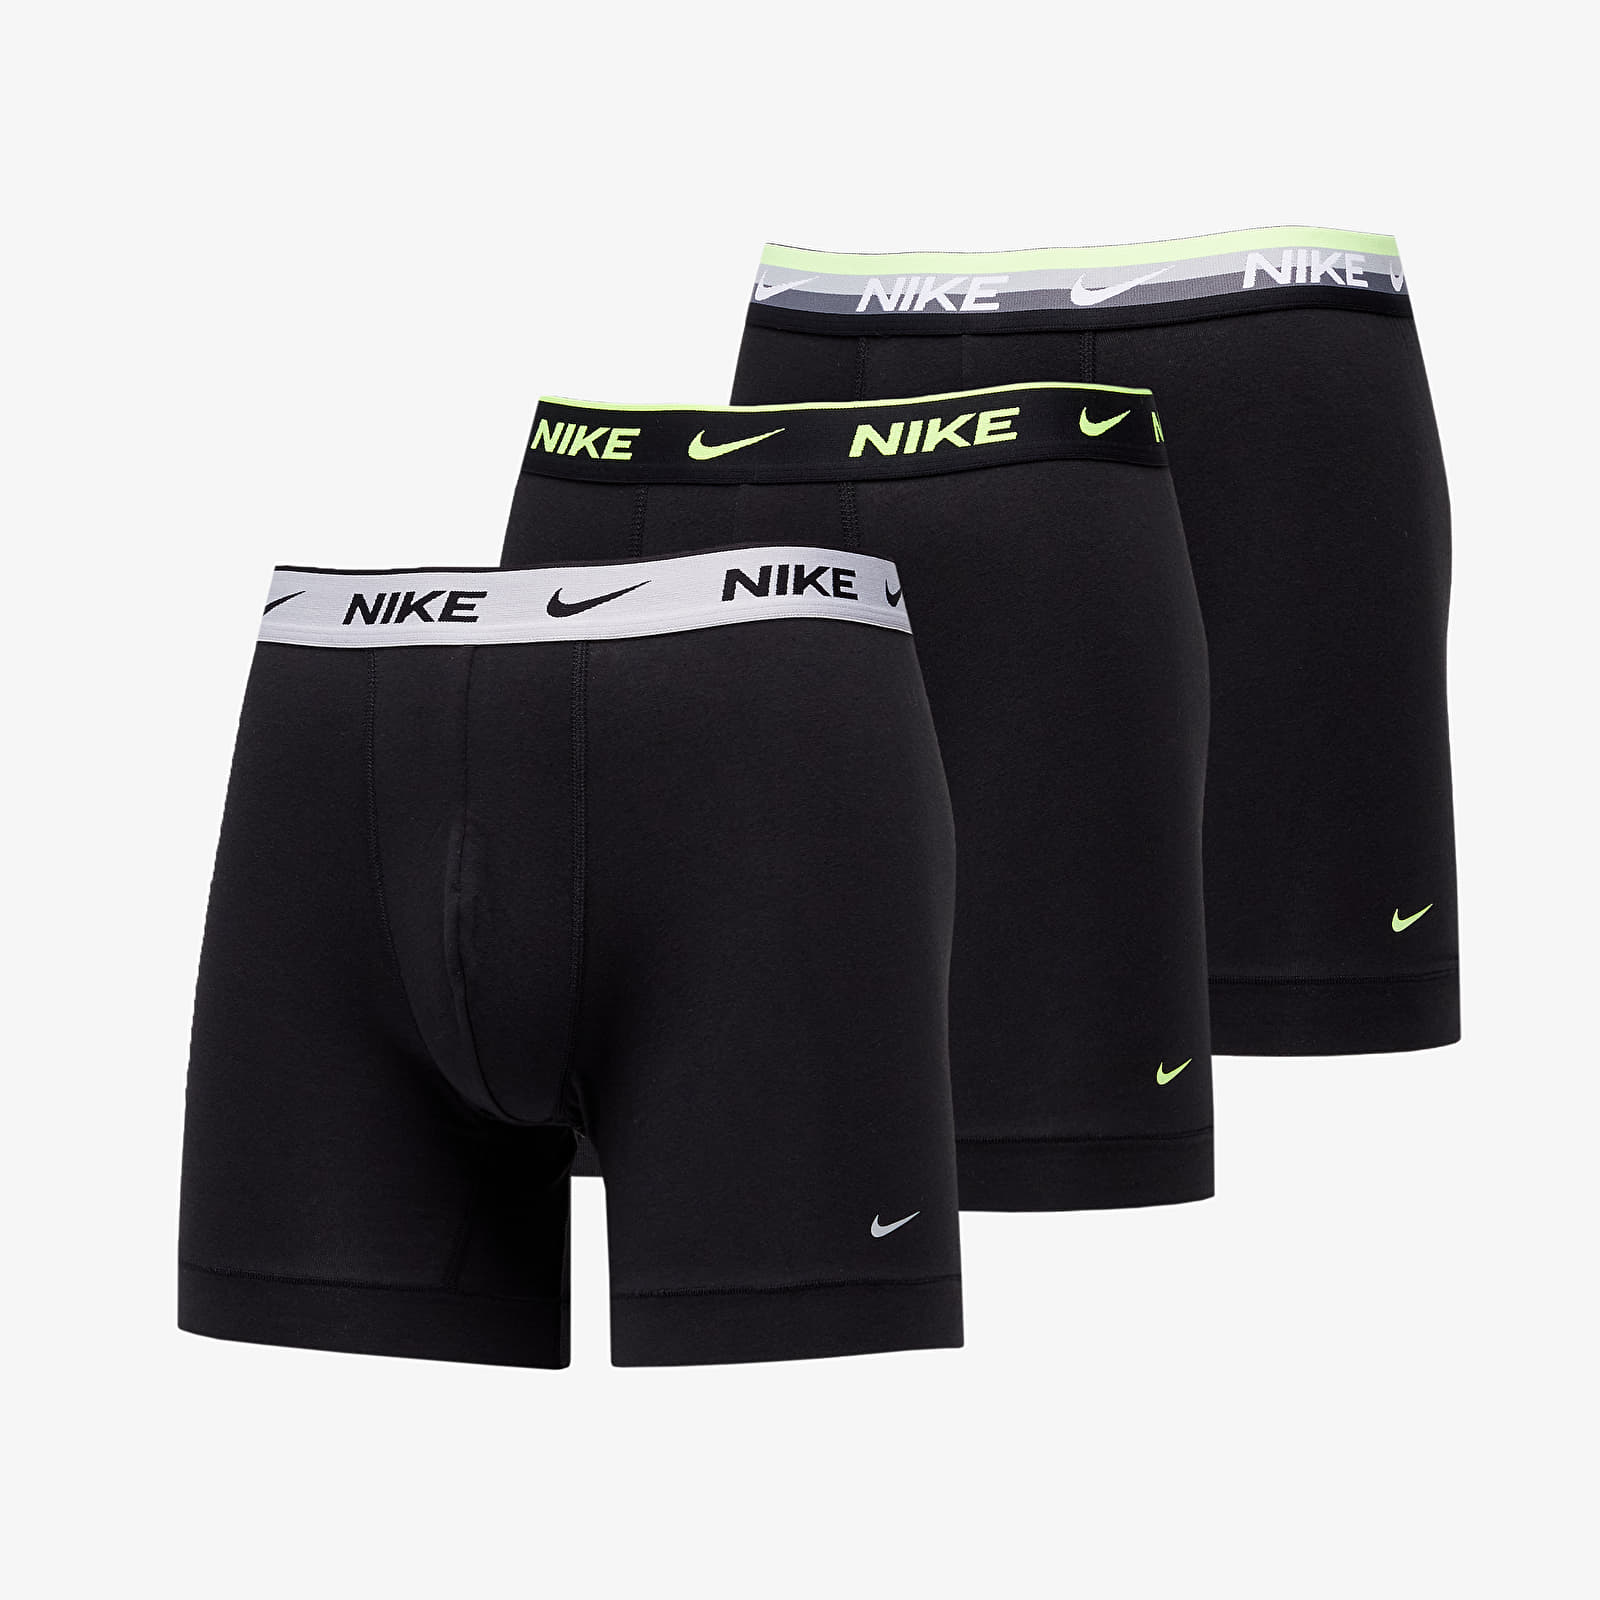 Nike 3 Pack Cotton Stretch Briefs In Black